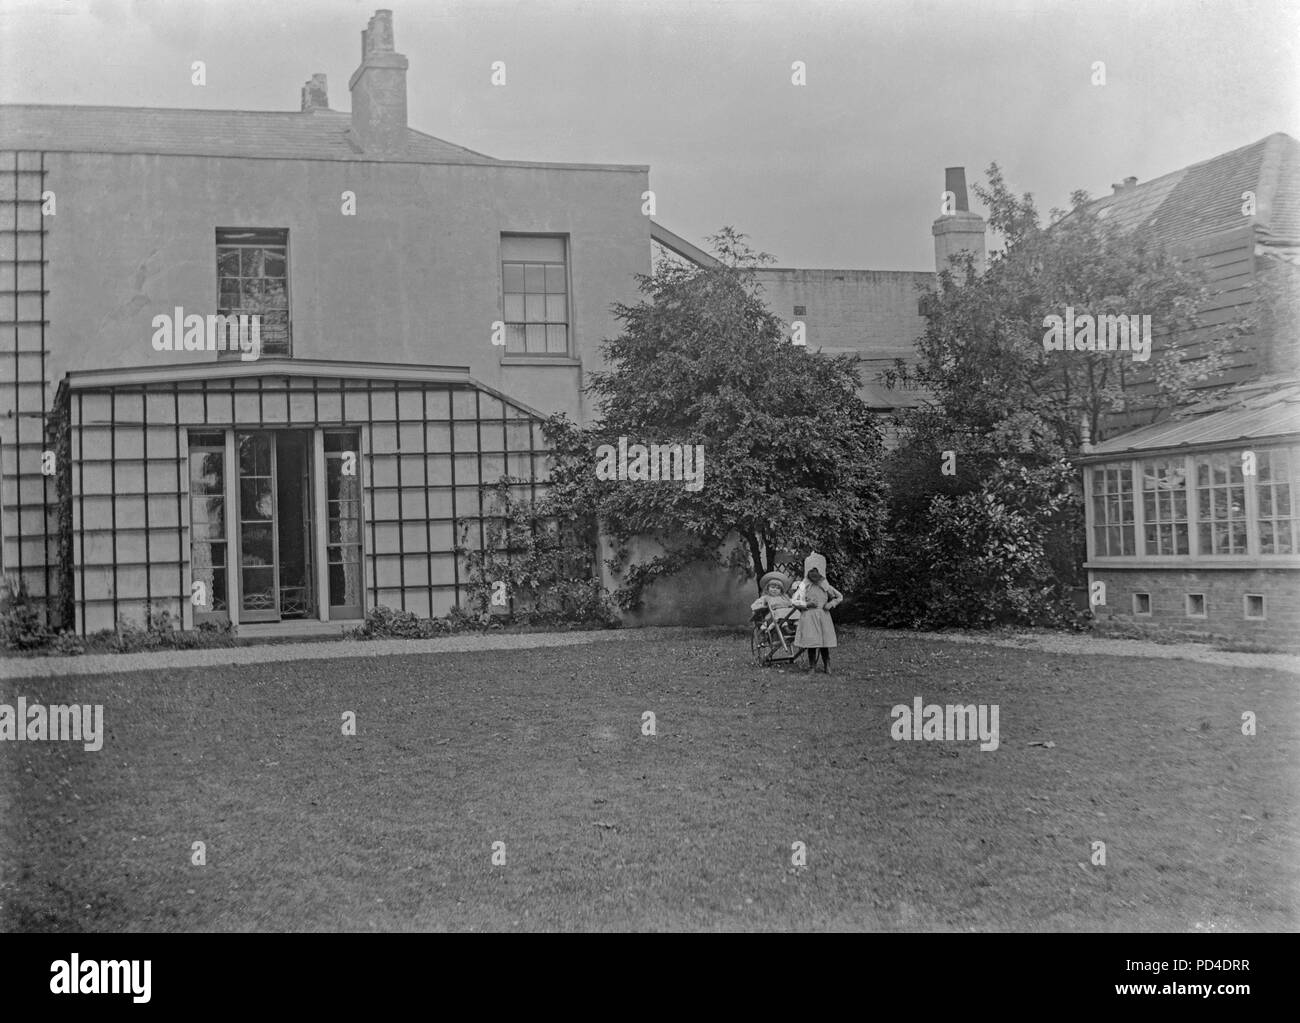 Alate photographie victorienne montrant deux jeunes filles dans le jardin il d'une grande maison en Angleterre. Photo montre de bons exemples de la mode enfantine de l'époque. Banque D'Images